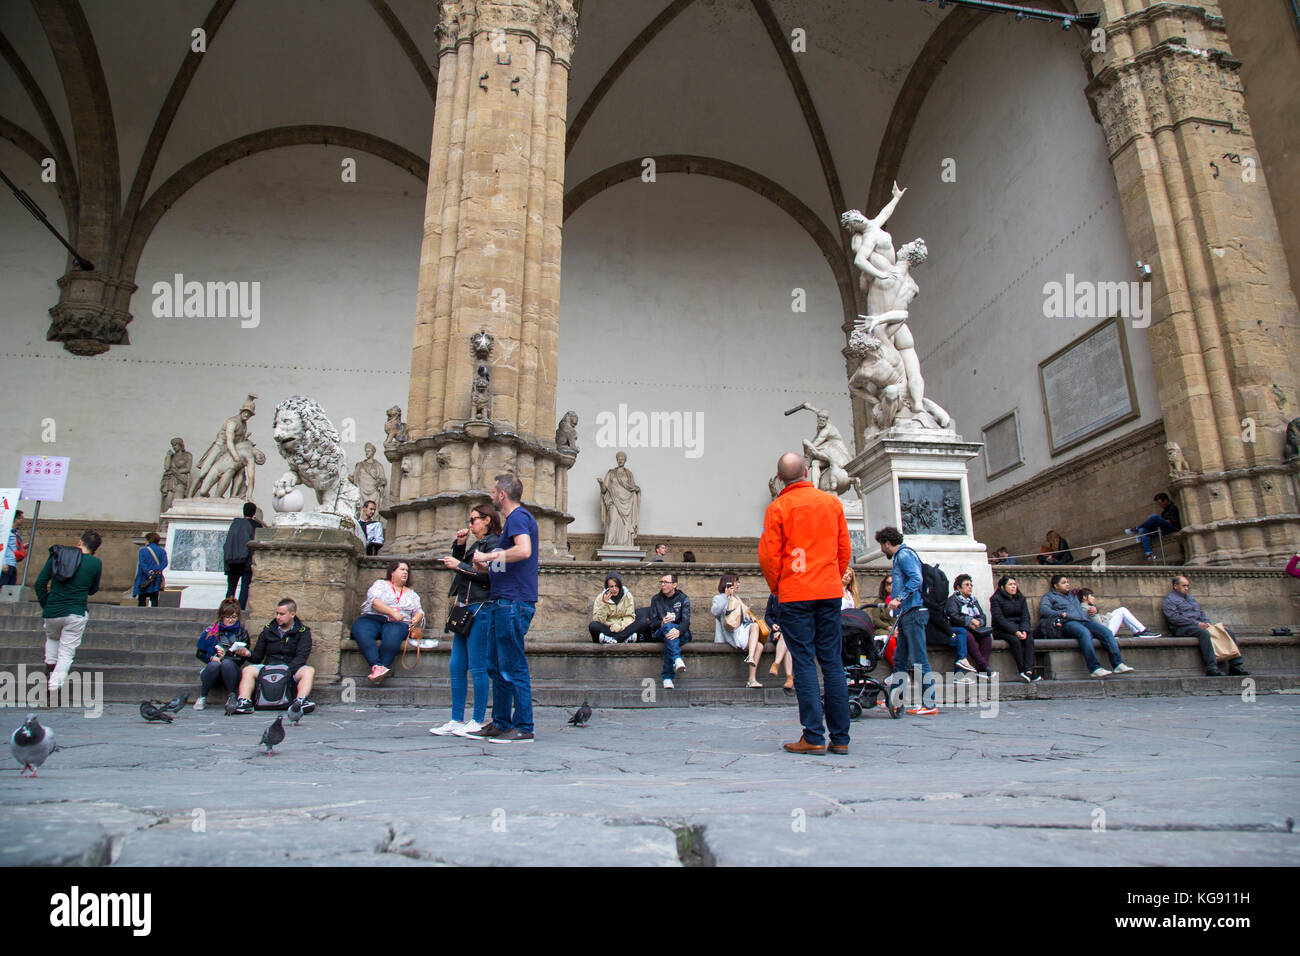 Scène de rue à la Medici piazza montrant les touristes le repos, l'pidgeons, et des sculptures avec des piliers Banque D'Images